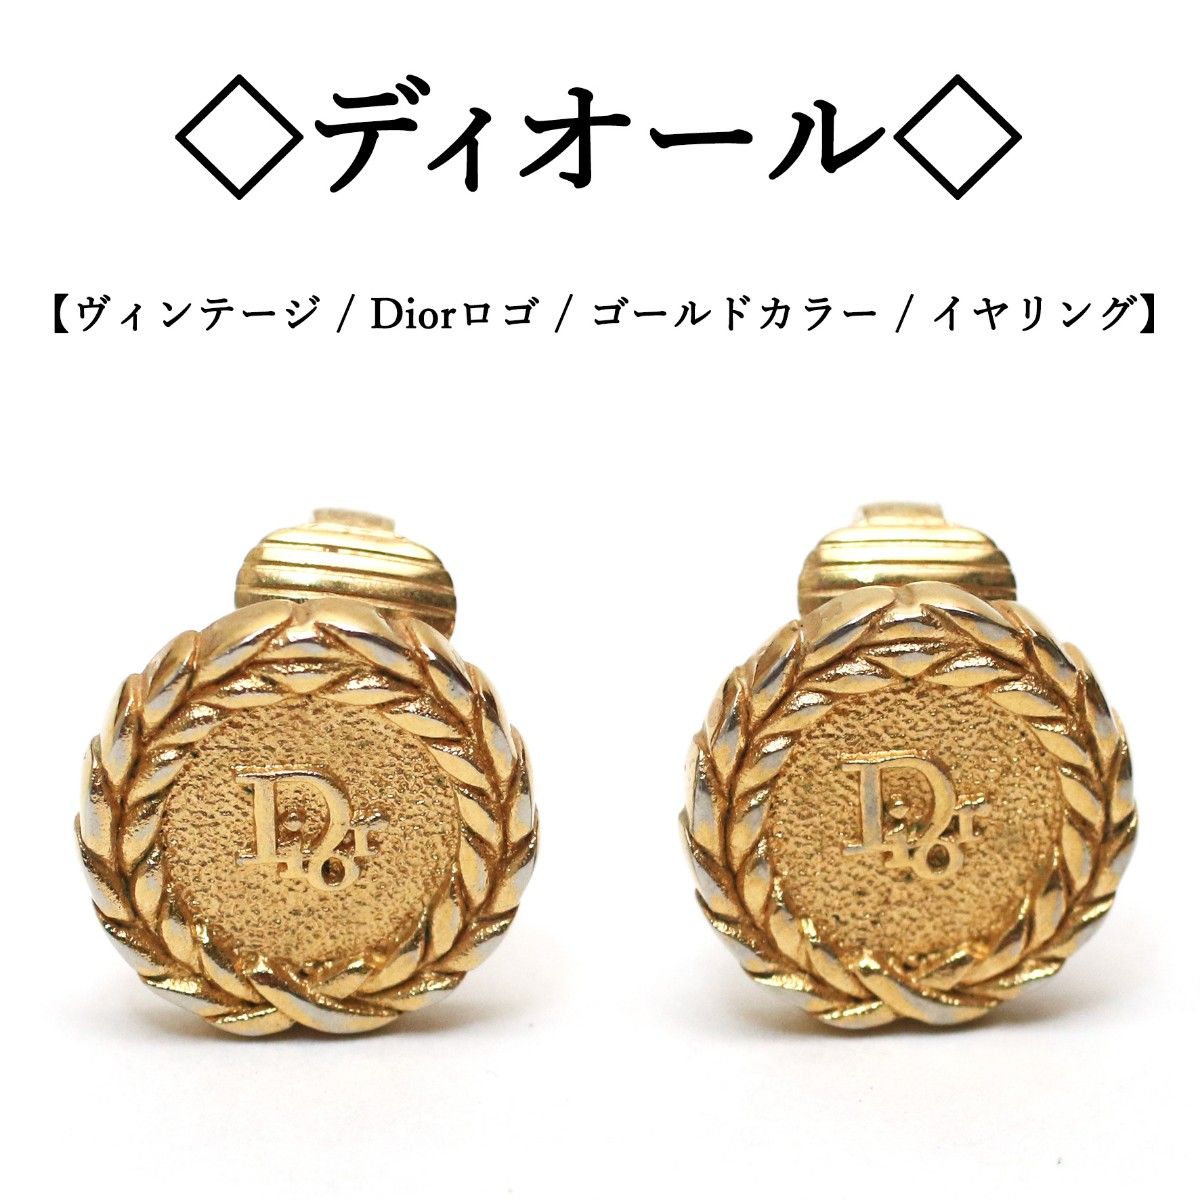 【ヴィンテージ】◇ディオール◇ 月桂樹 / Dior ロゴ / ゴールドカラー